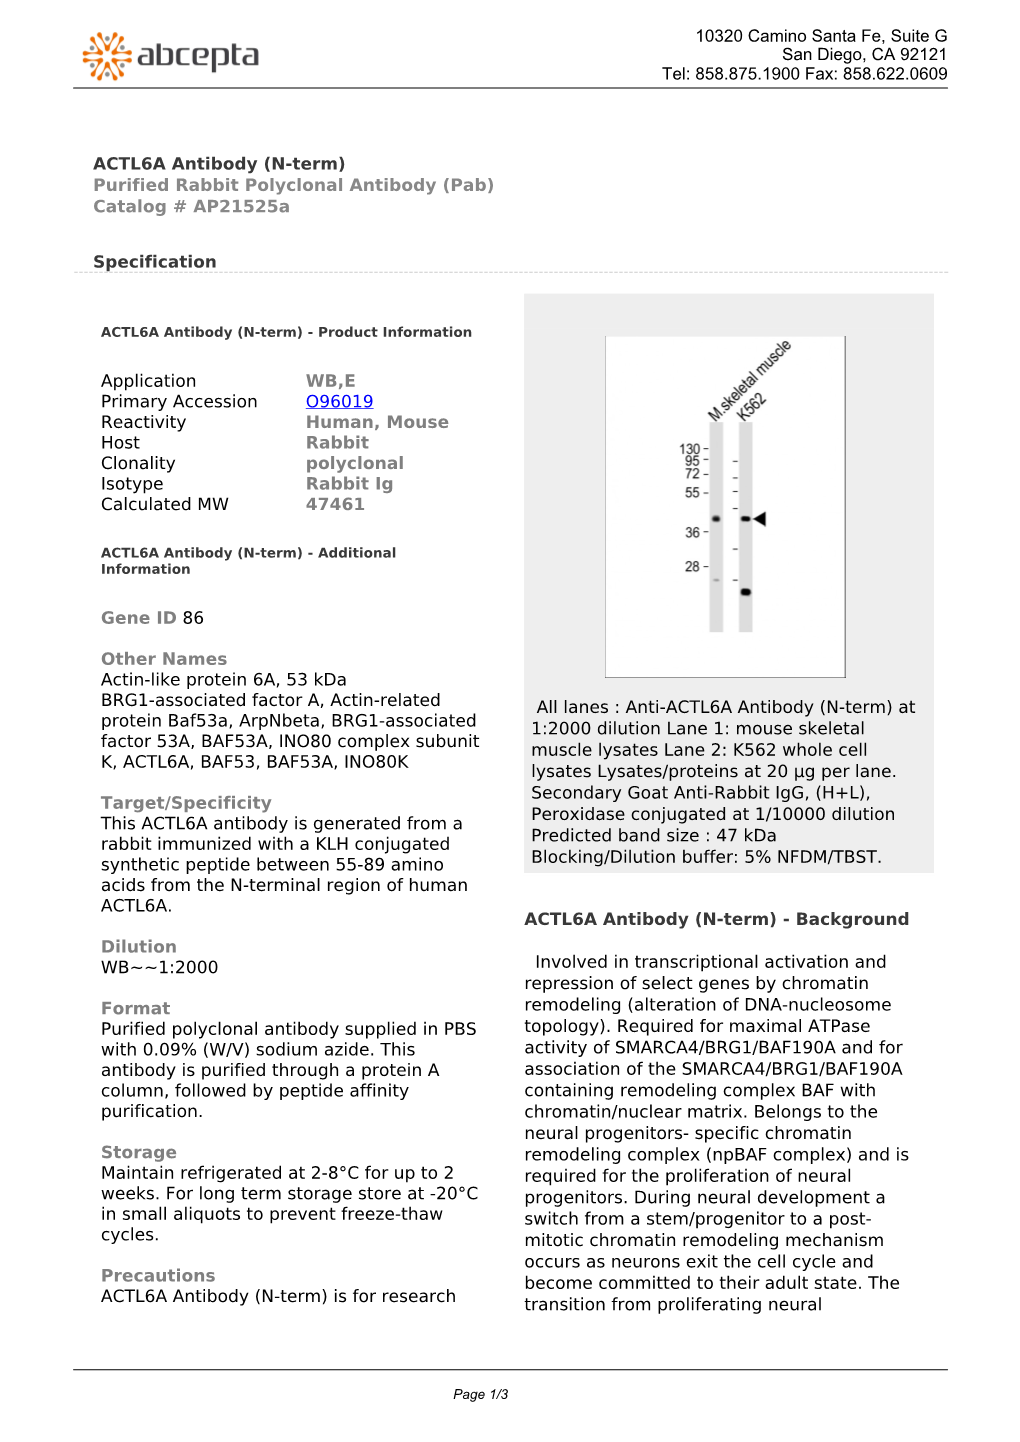 ACTL6A Antibody (N-Term) Purified Rabbit Polyclonal Antibody (Pab) Catalog # Ap21525a